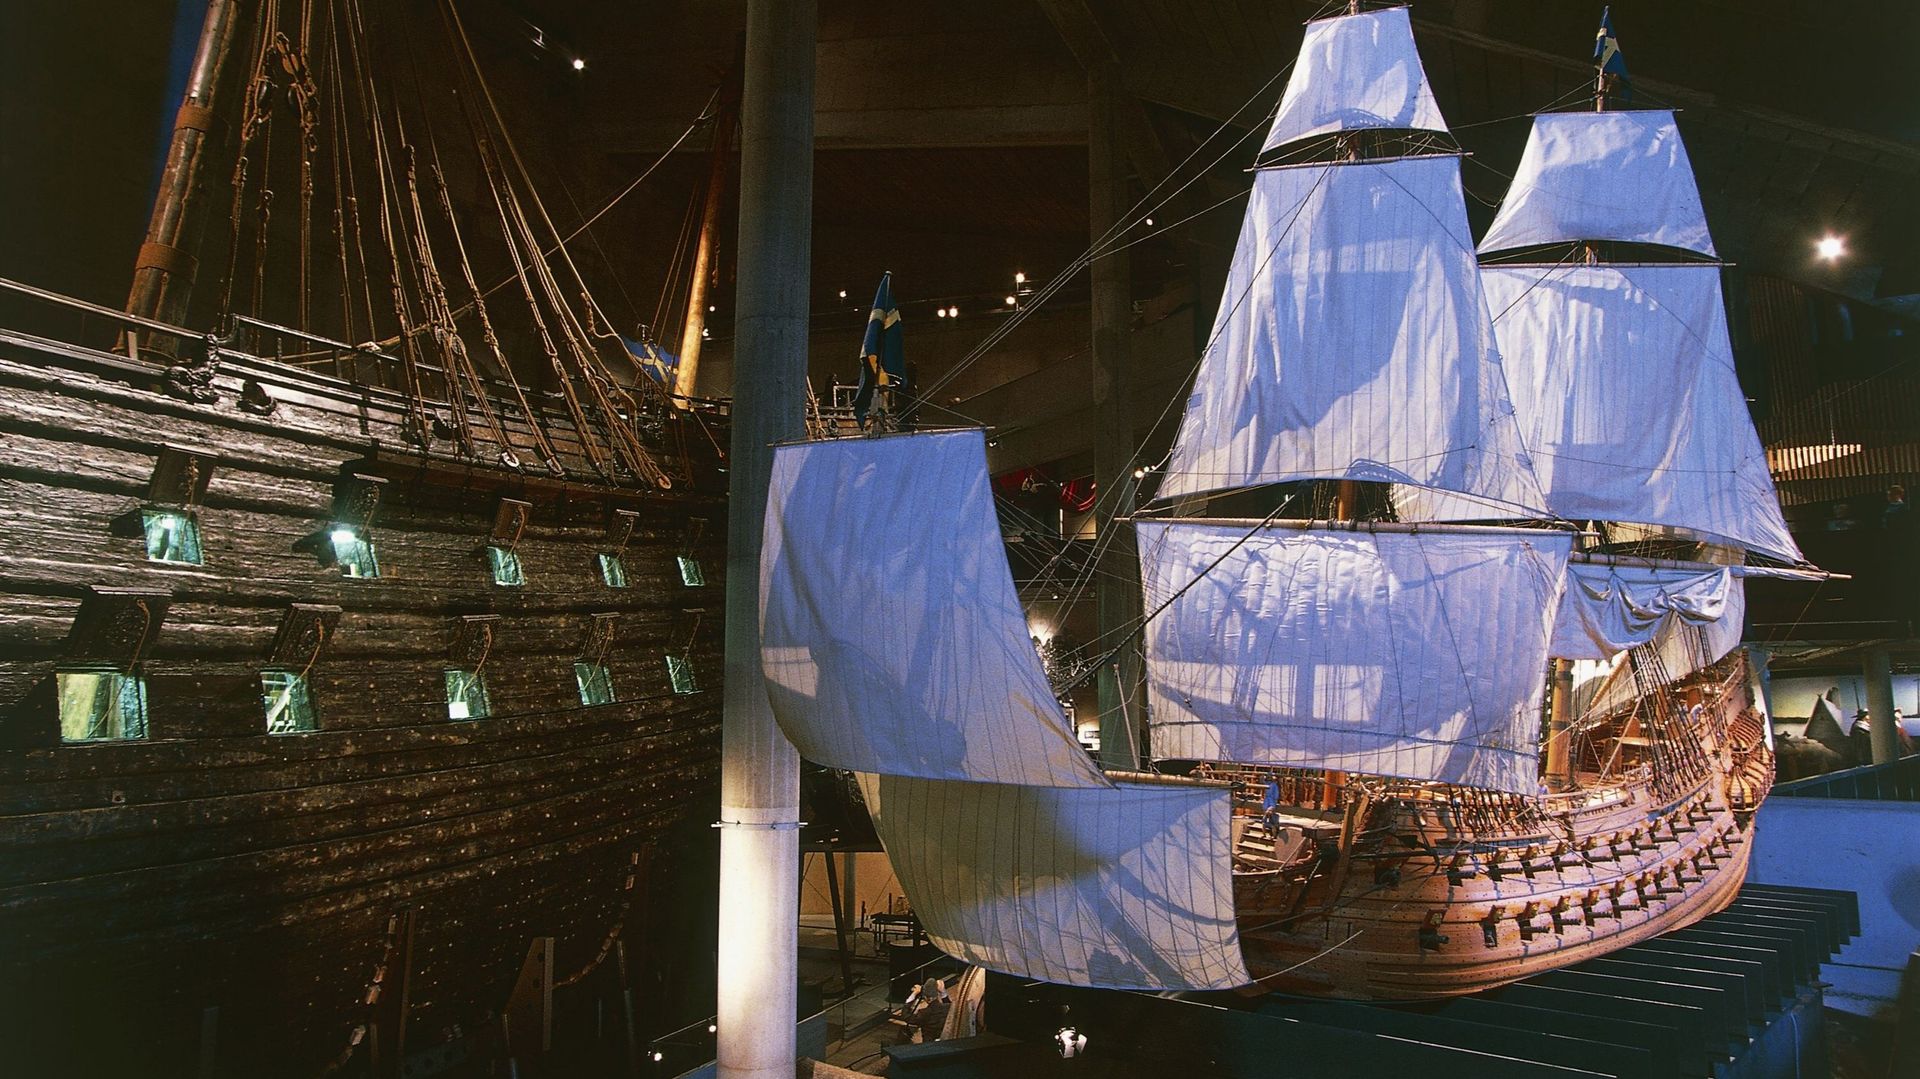 Le musée Vasa